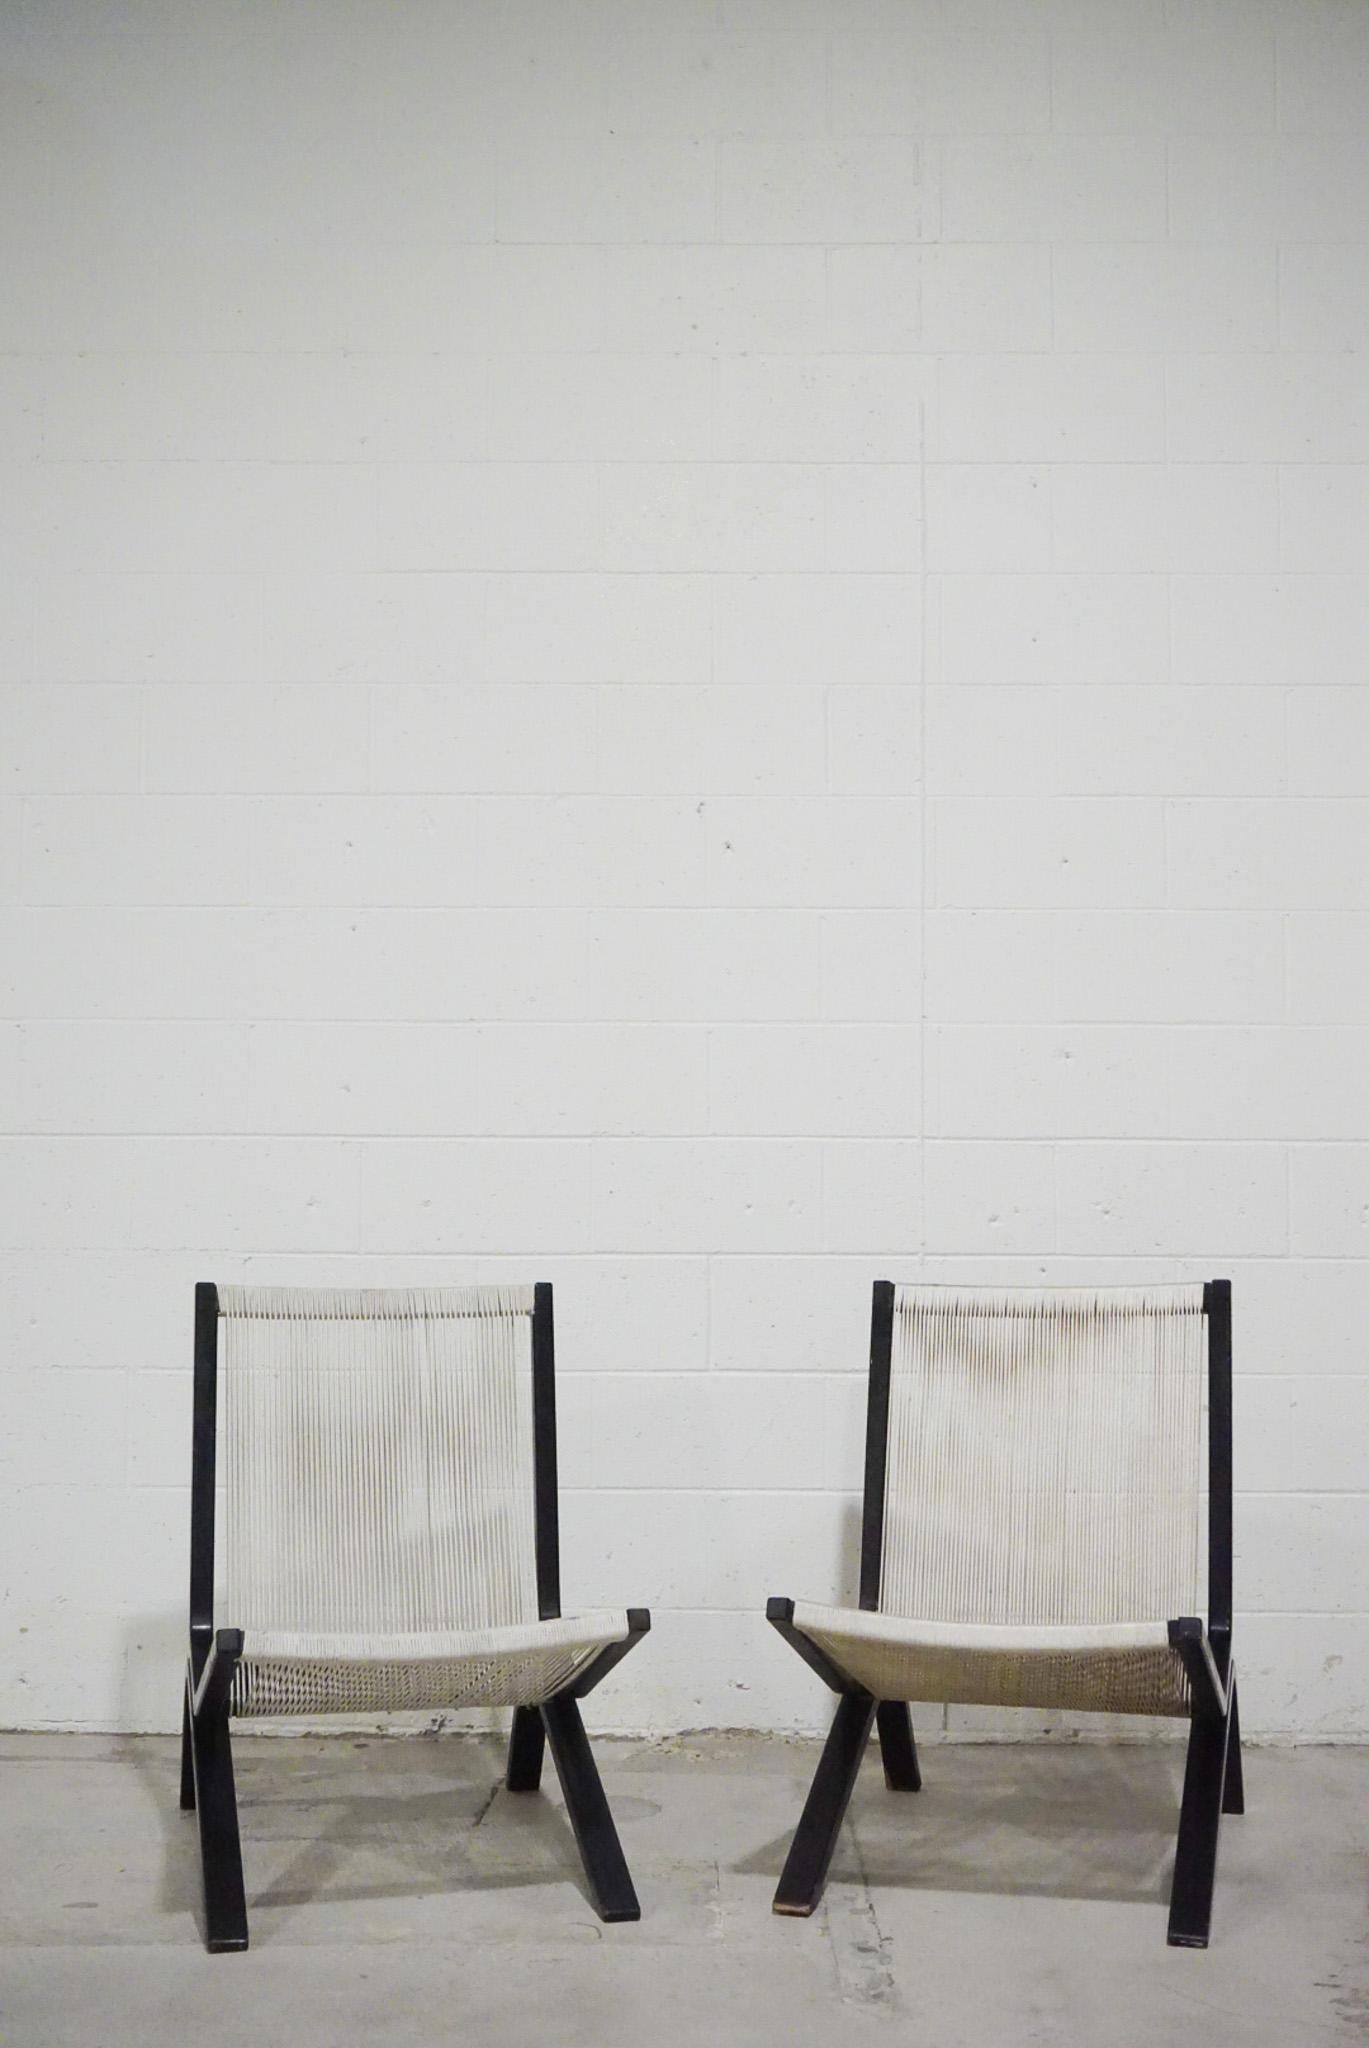 Une rare paire de chaises de salon conçues par Allan Gould, vers 1952.

Structure en bouleau noir peint avec assise et dossier en corde.   

Une combinaison intéressante de matériaux représentatifs du design d'après-guerre. 
  
En bon état vintage